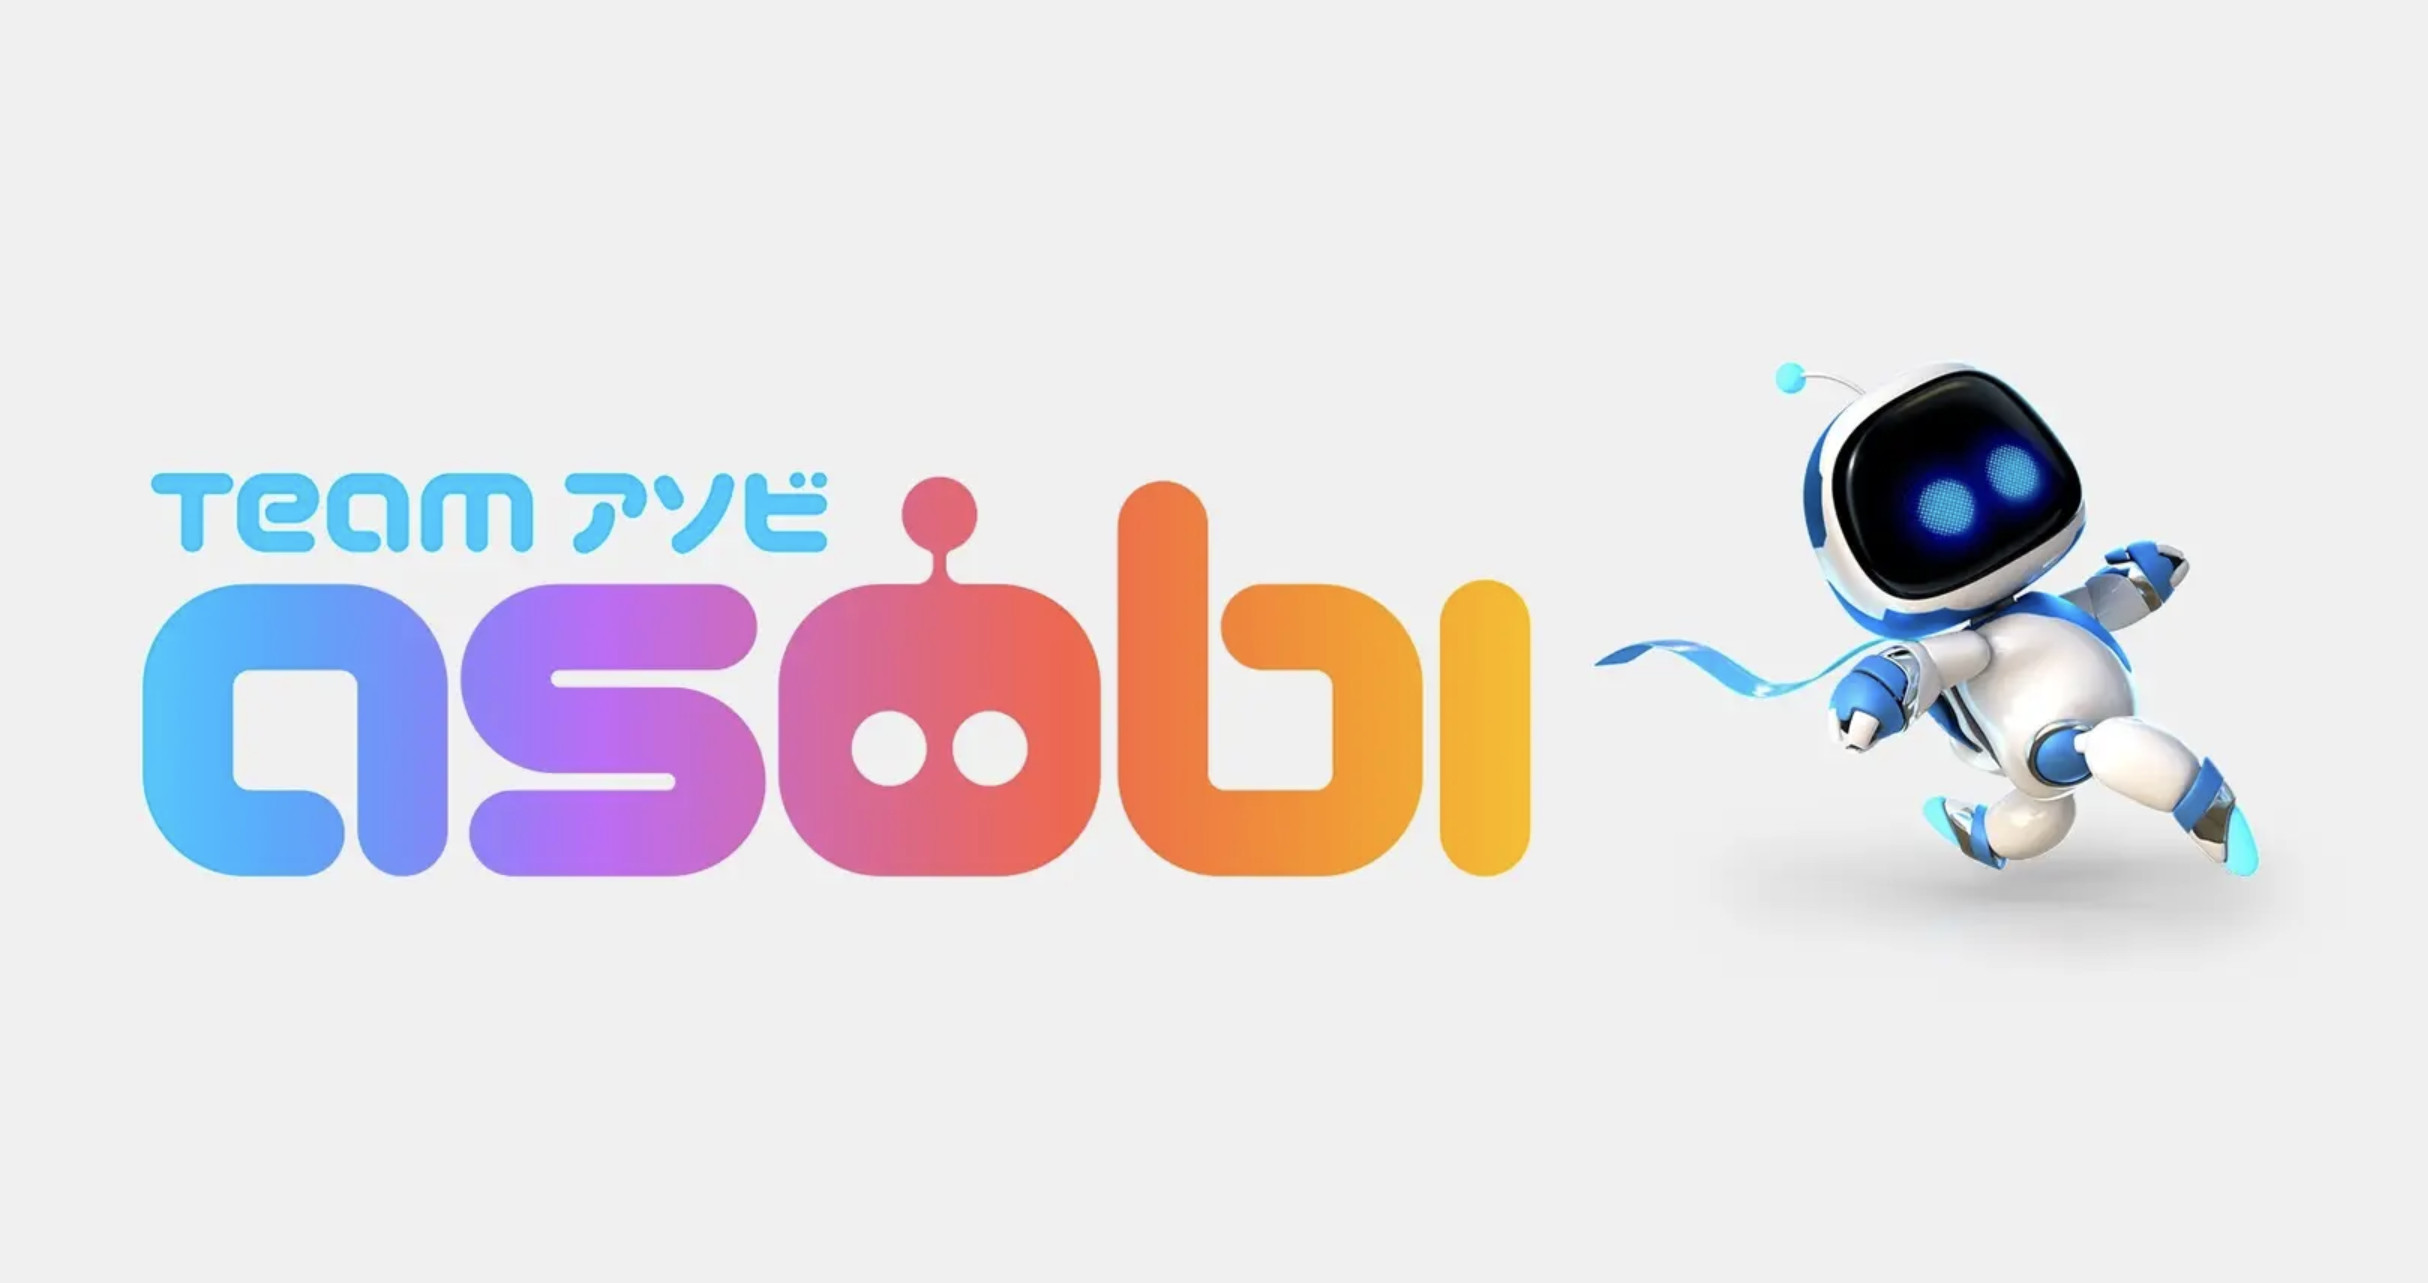 Team Asobi官方通告式成为索尼旗下工作室 新Logo公布